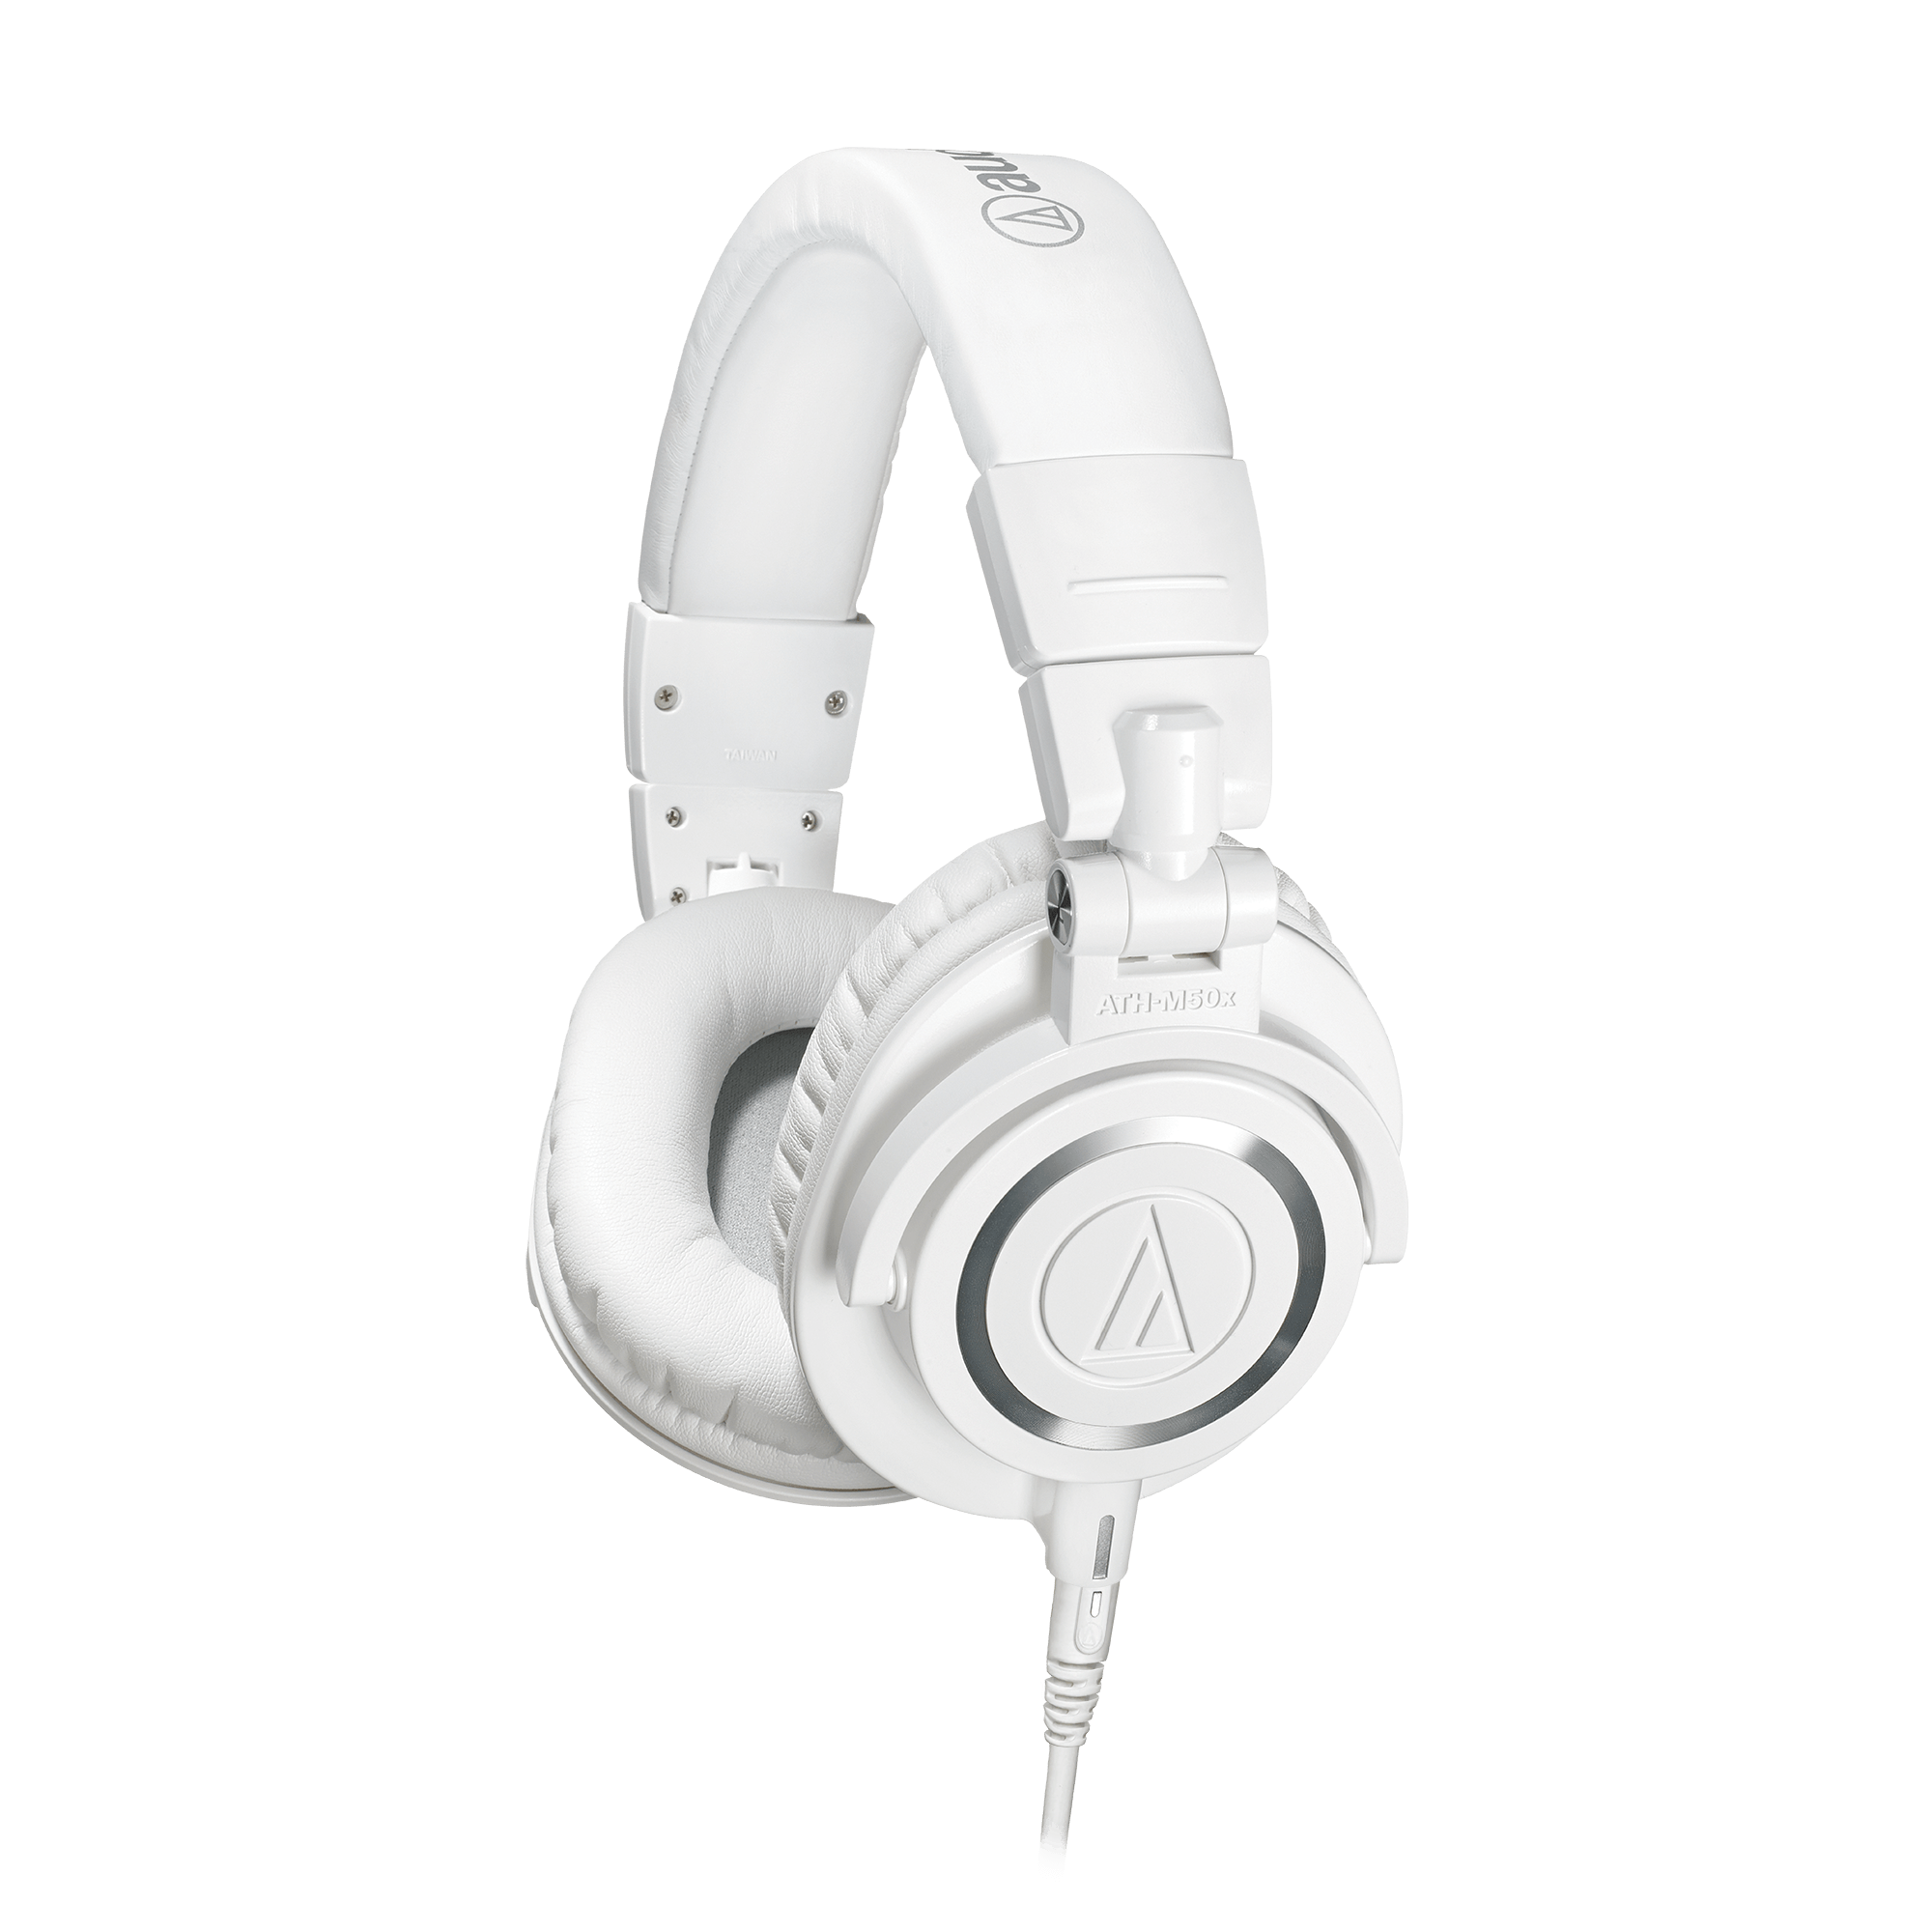 おすすめ audio−technica ホワイト ATH-M50X ヘッドフォン